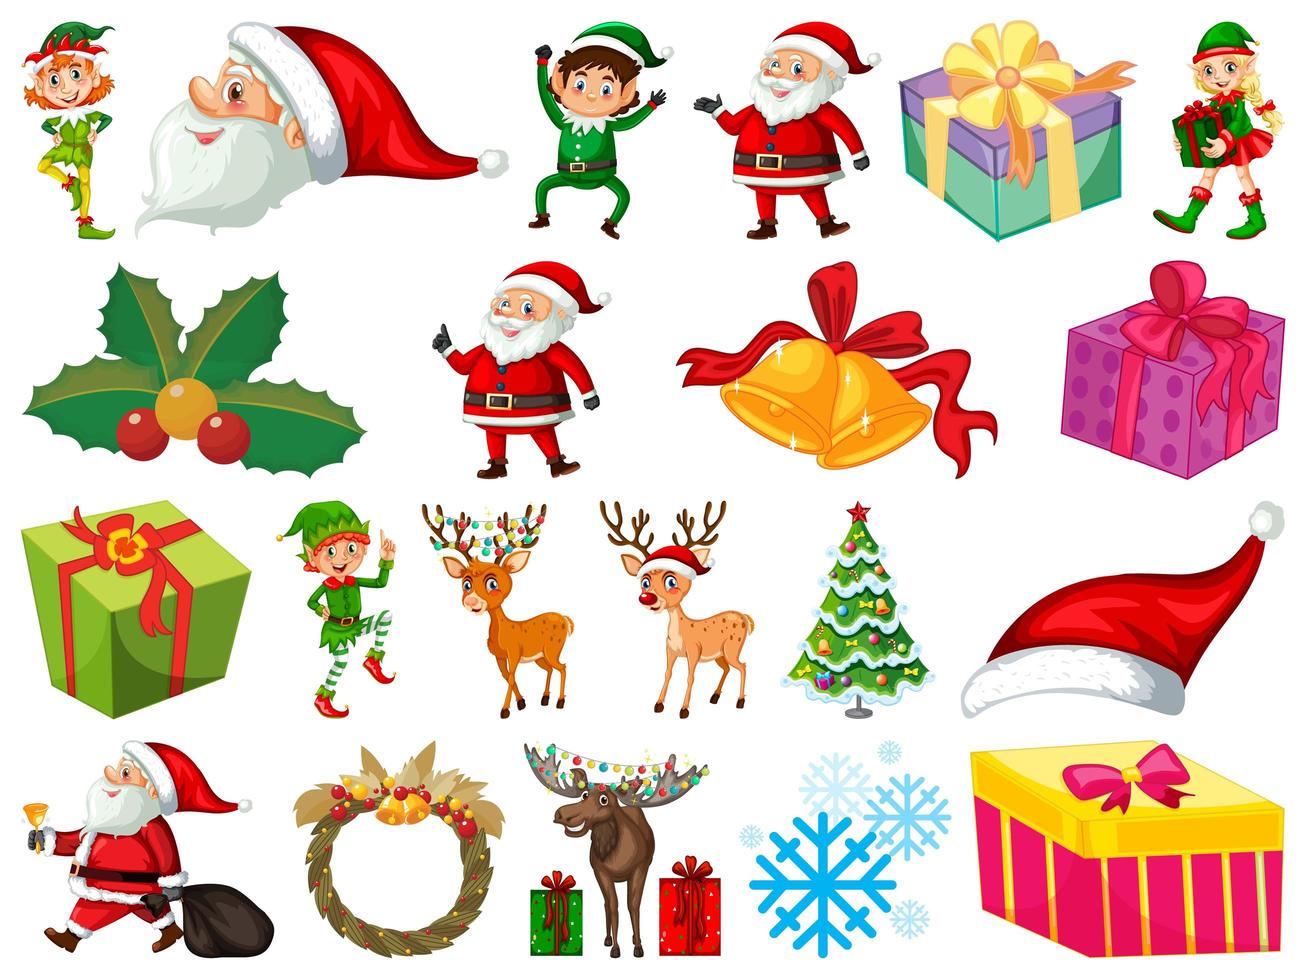 set di personaggio dei cartoni animati di Babbo Natale e oggetti di Natale isolati su sfondo bianco vettore